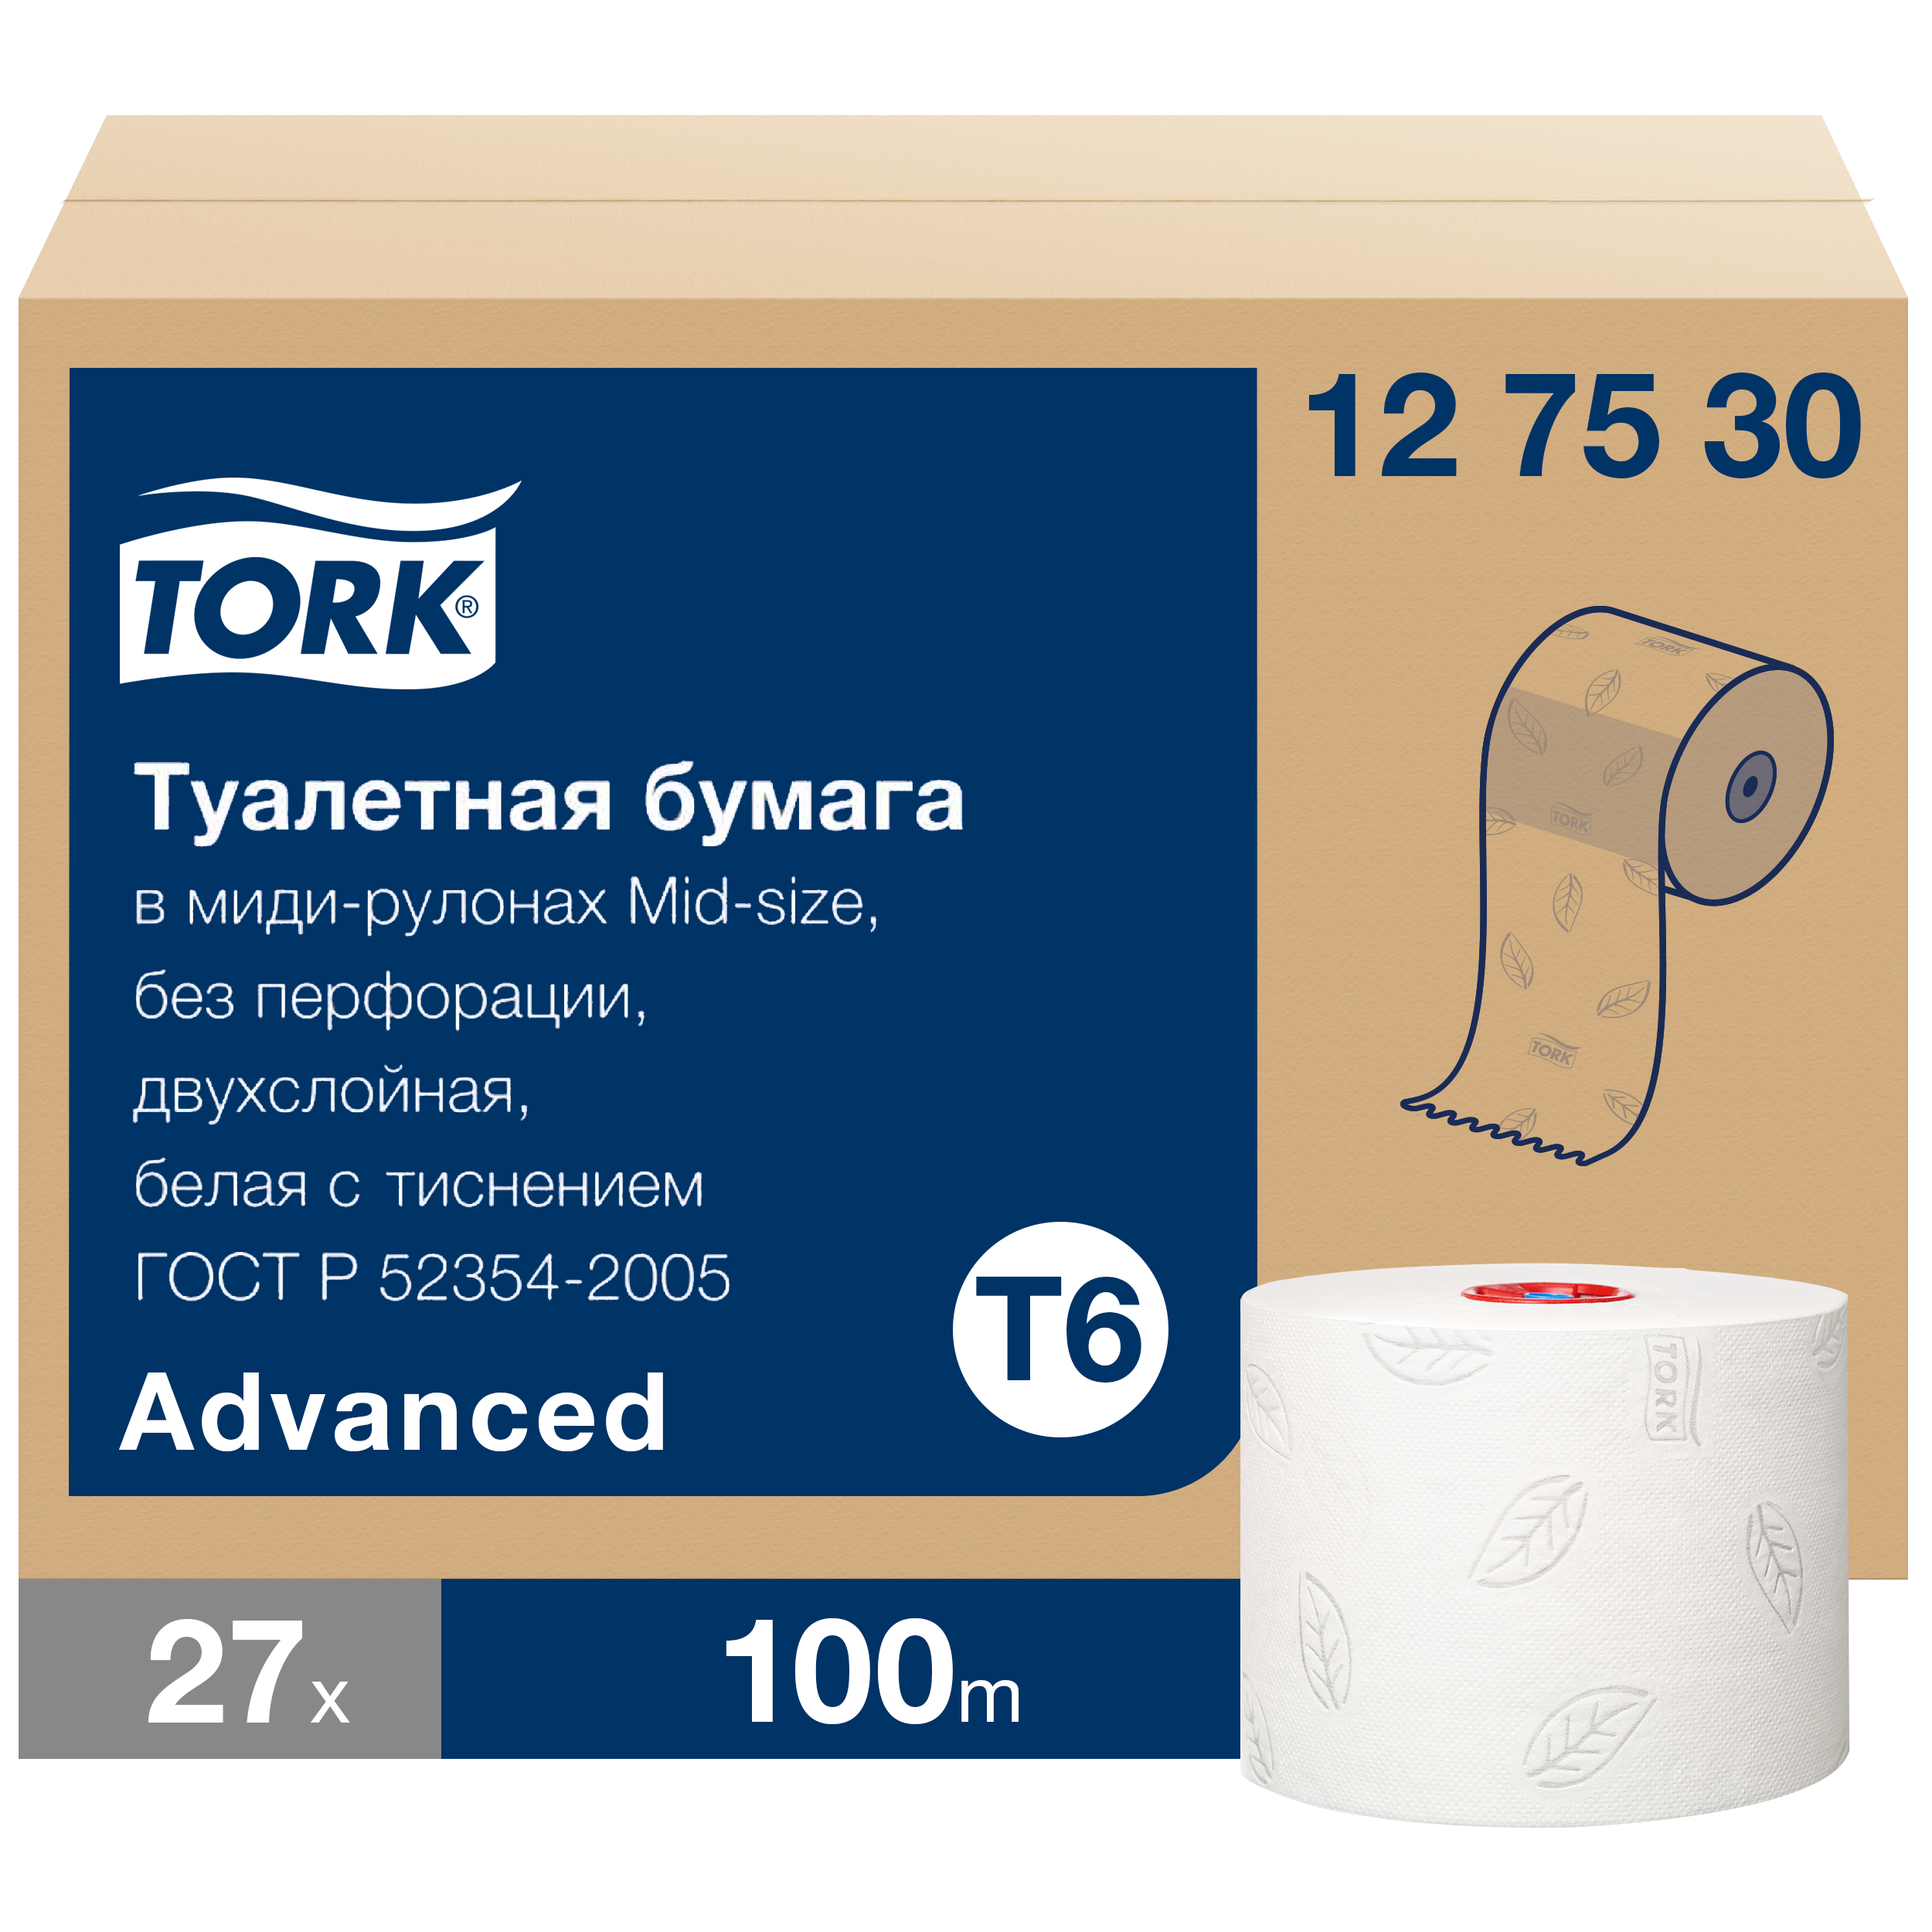 Бумага туалетная Tork Mid-size Advanced в рулонах, T6, 2 слоя, 100м, 27 рулонов бумага туалетная в mid size рулонах tork universal t6 1 слой 135м рулон белая мягкая